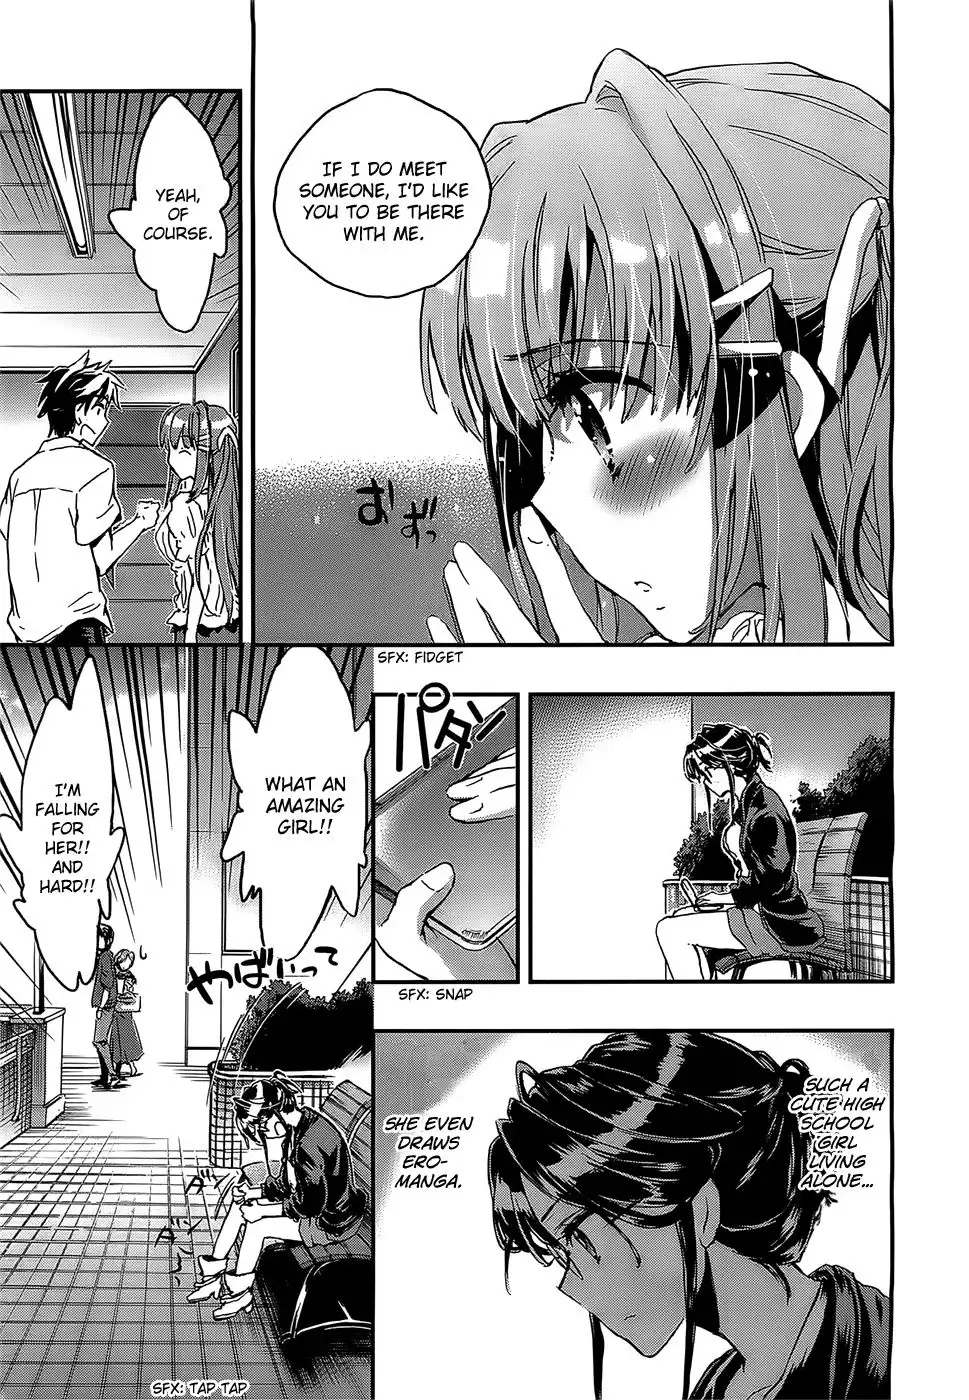 Onna no Ko ga H na Manga Egaicha Dame desu ka? Chapter 4